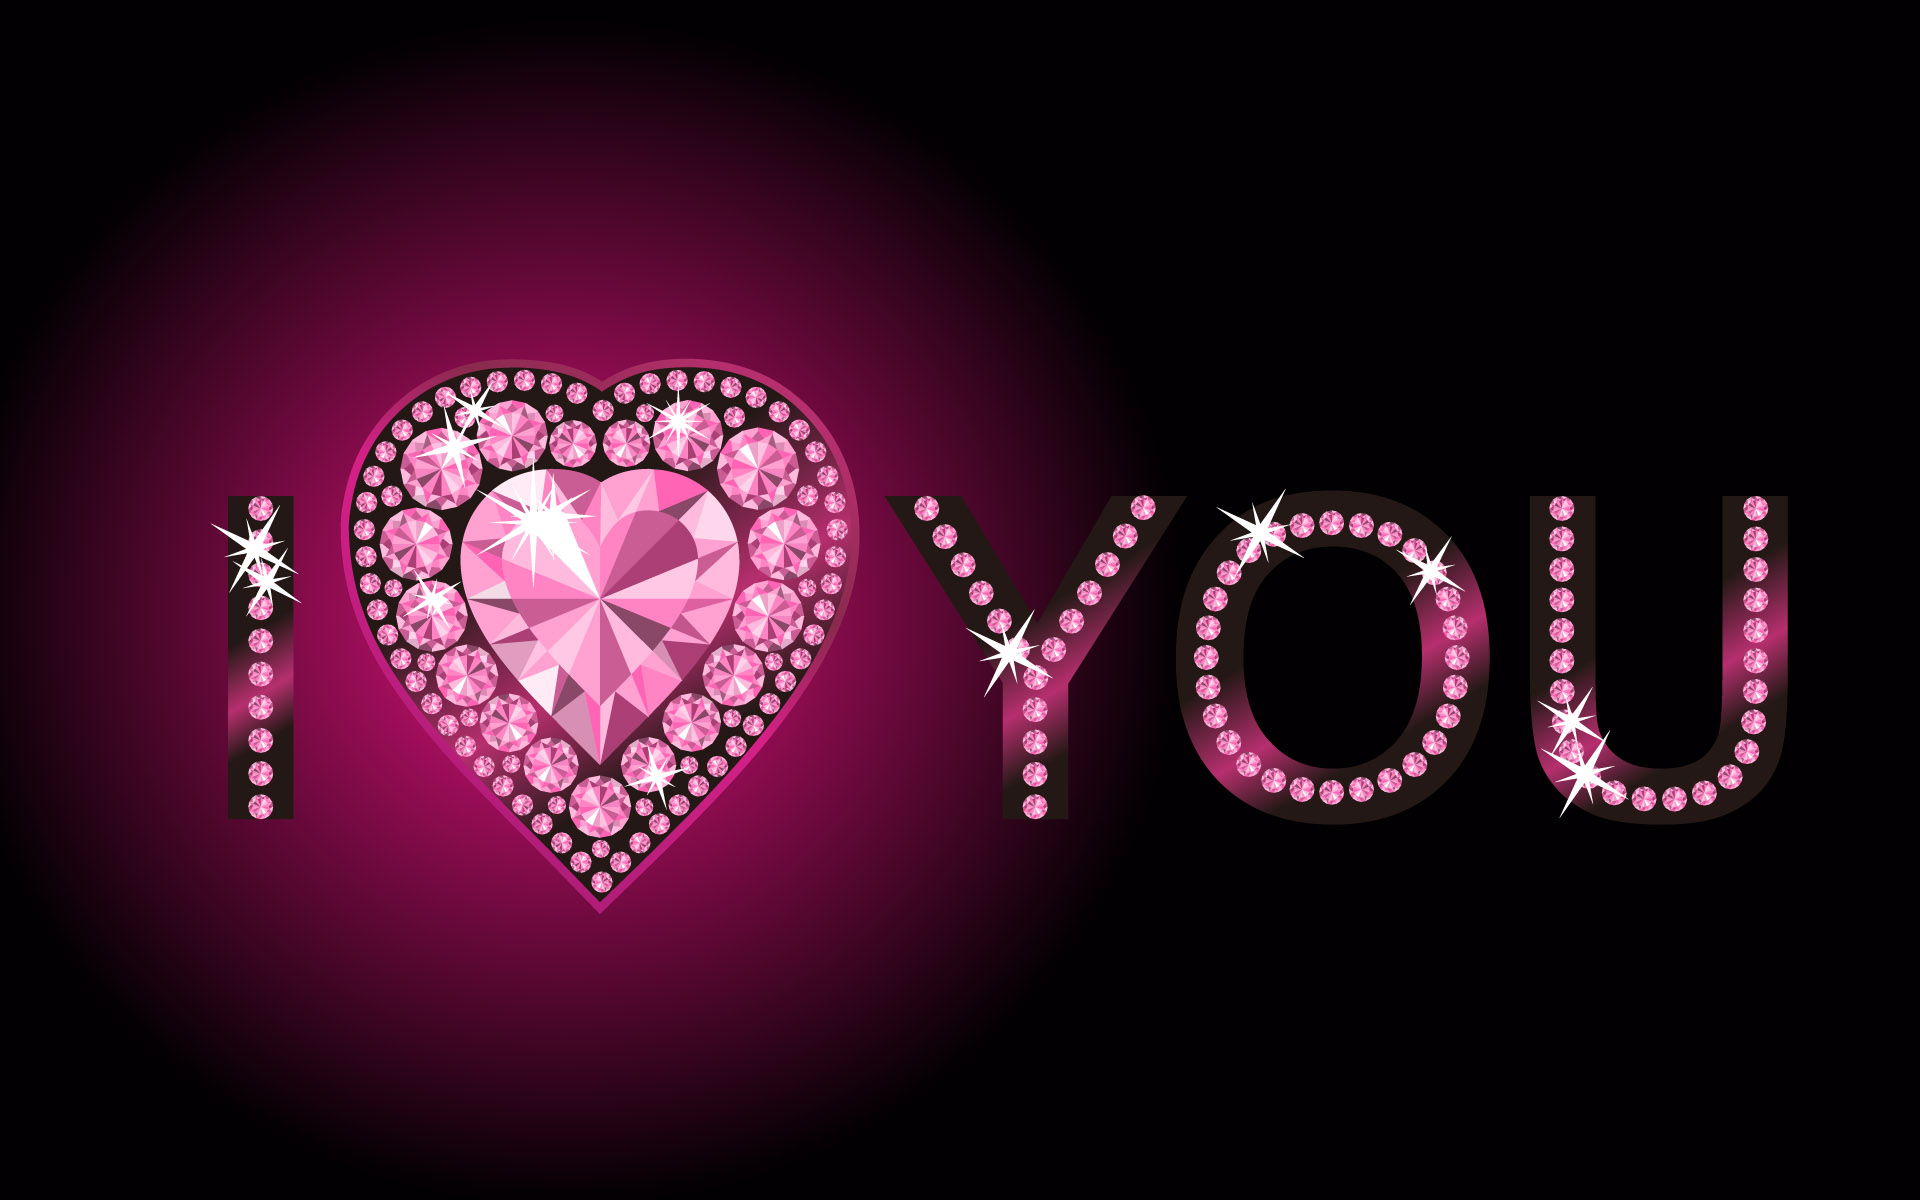 Hình ảnh I Love You với đá kim cương màu hồng đẹp nhất